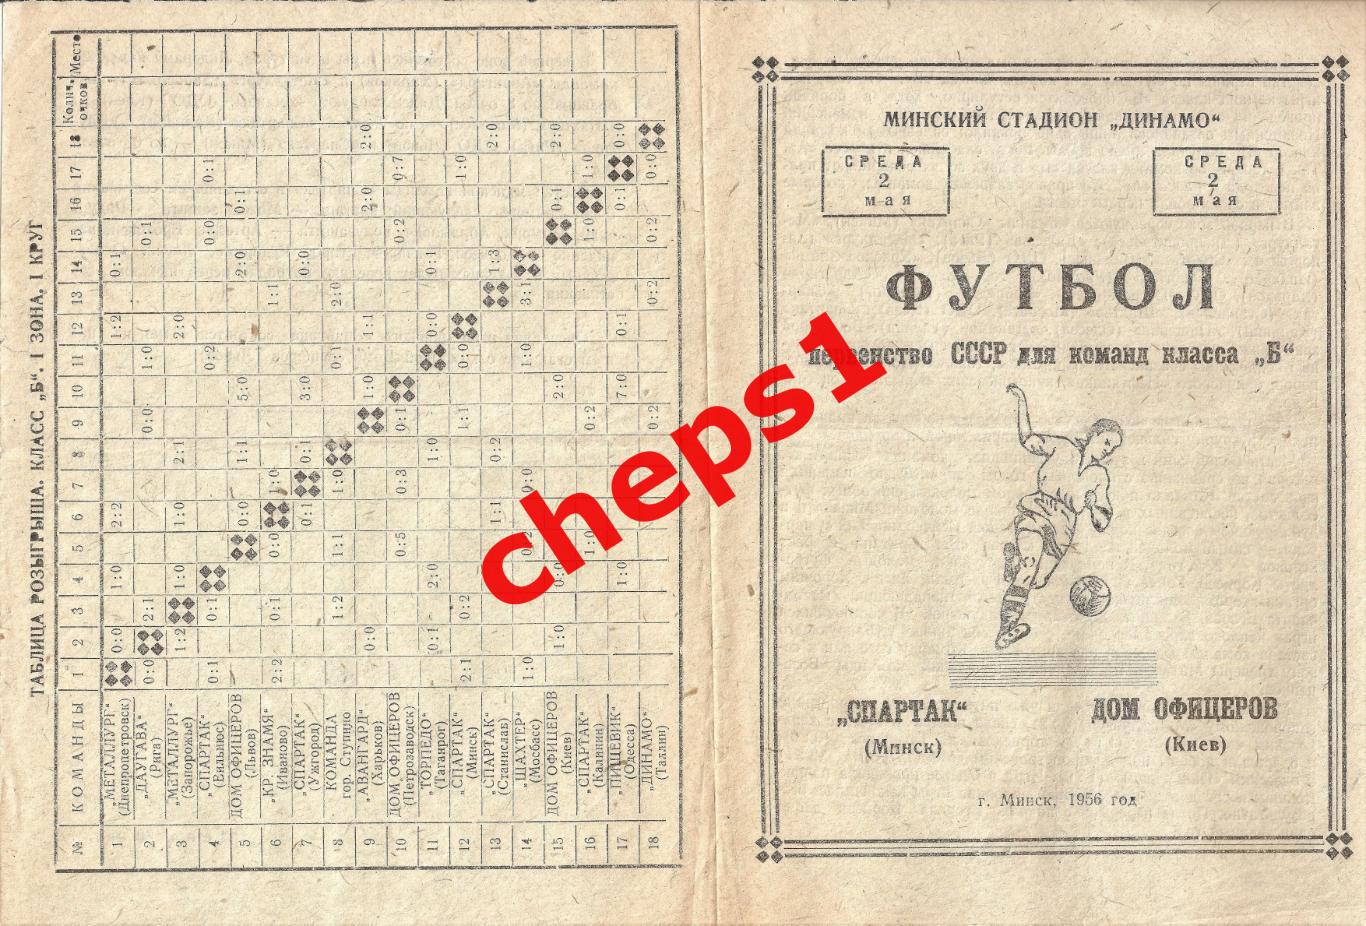 1956 Спартак (Минск) - ОДО (Киев), 1-й матч